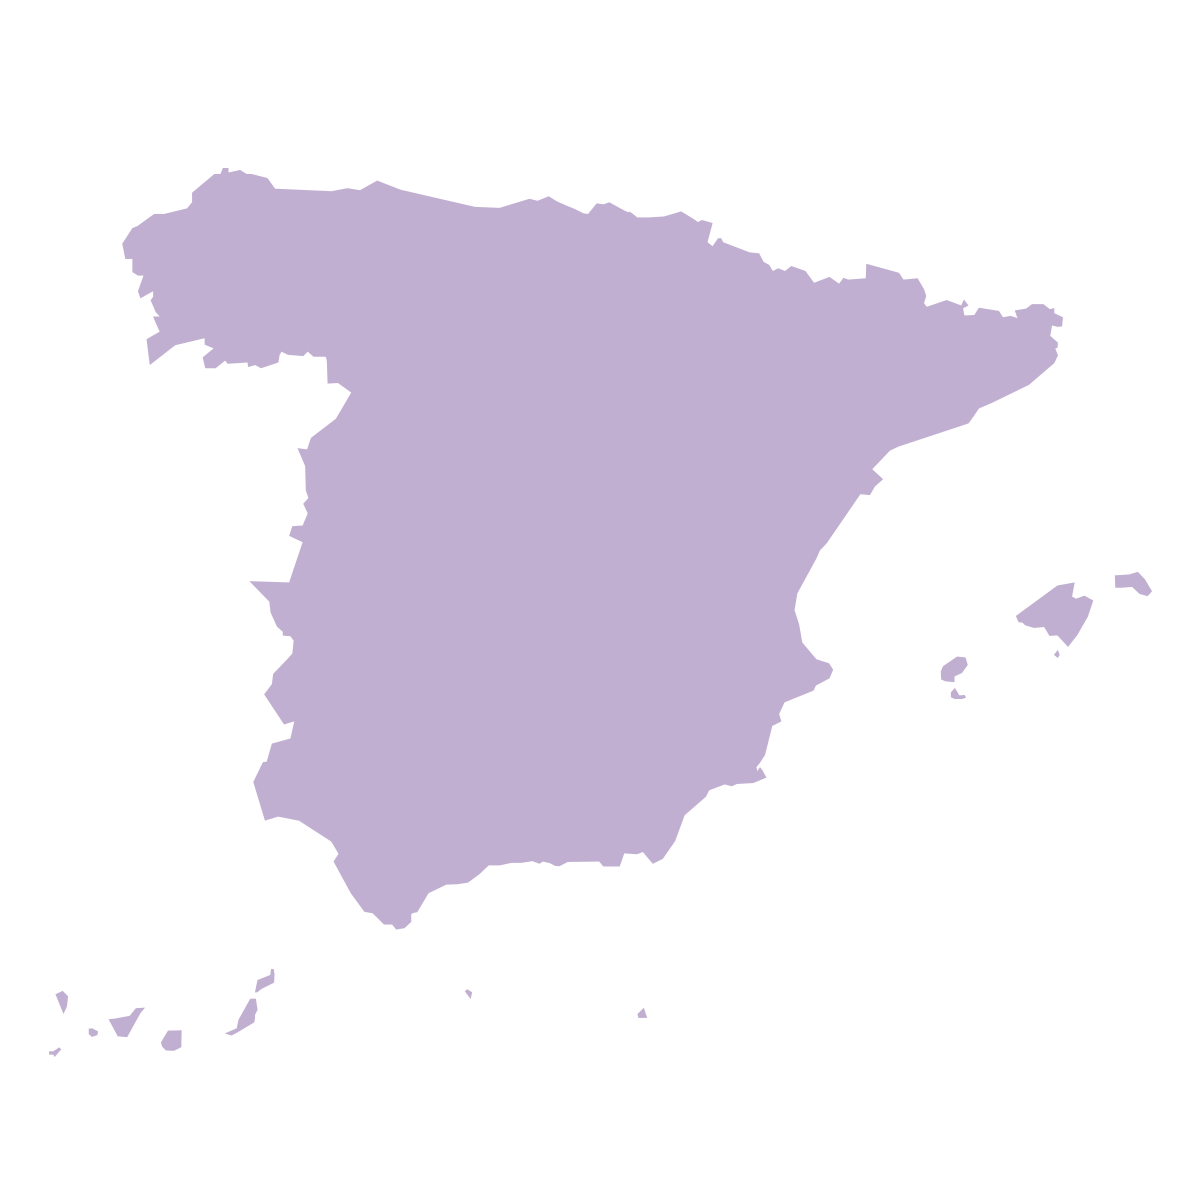 mapa espana mamifit